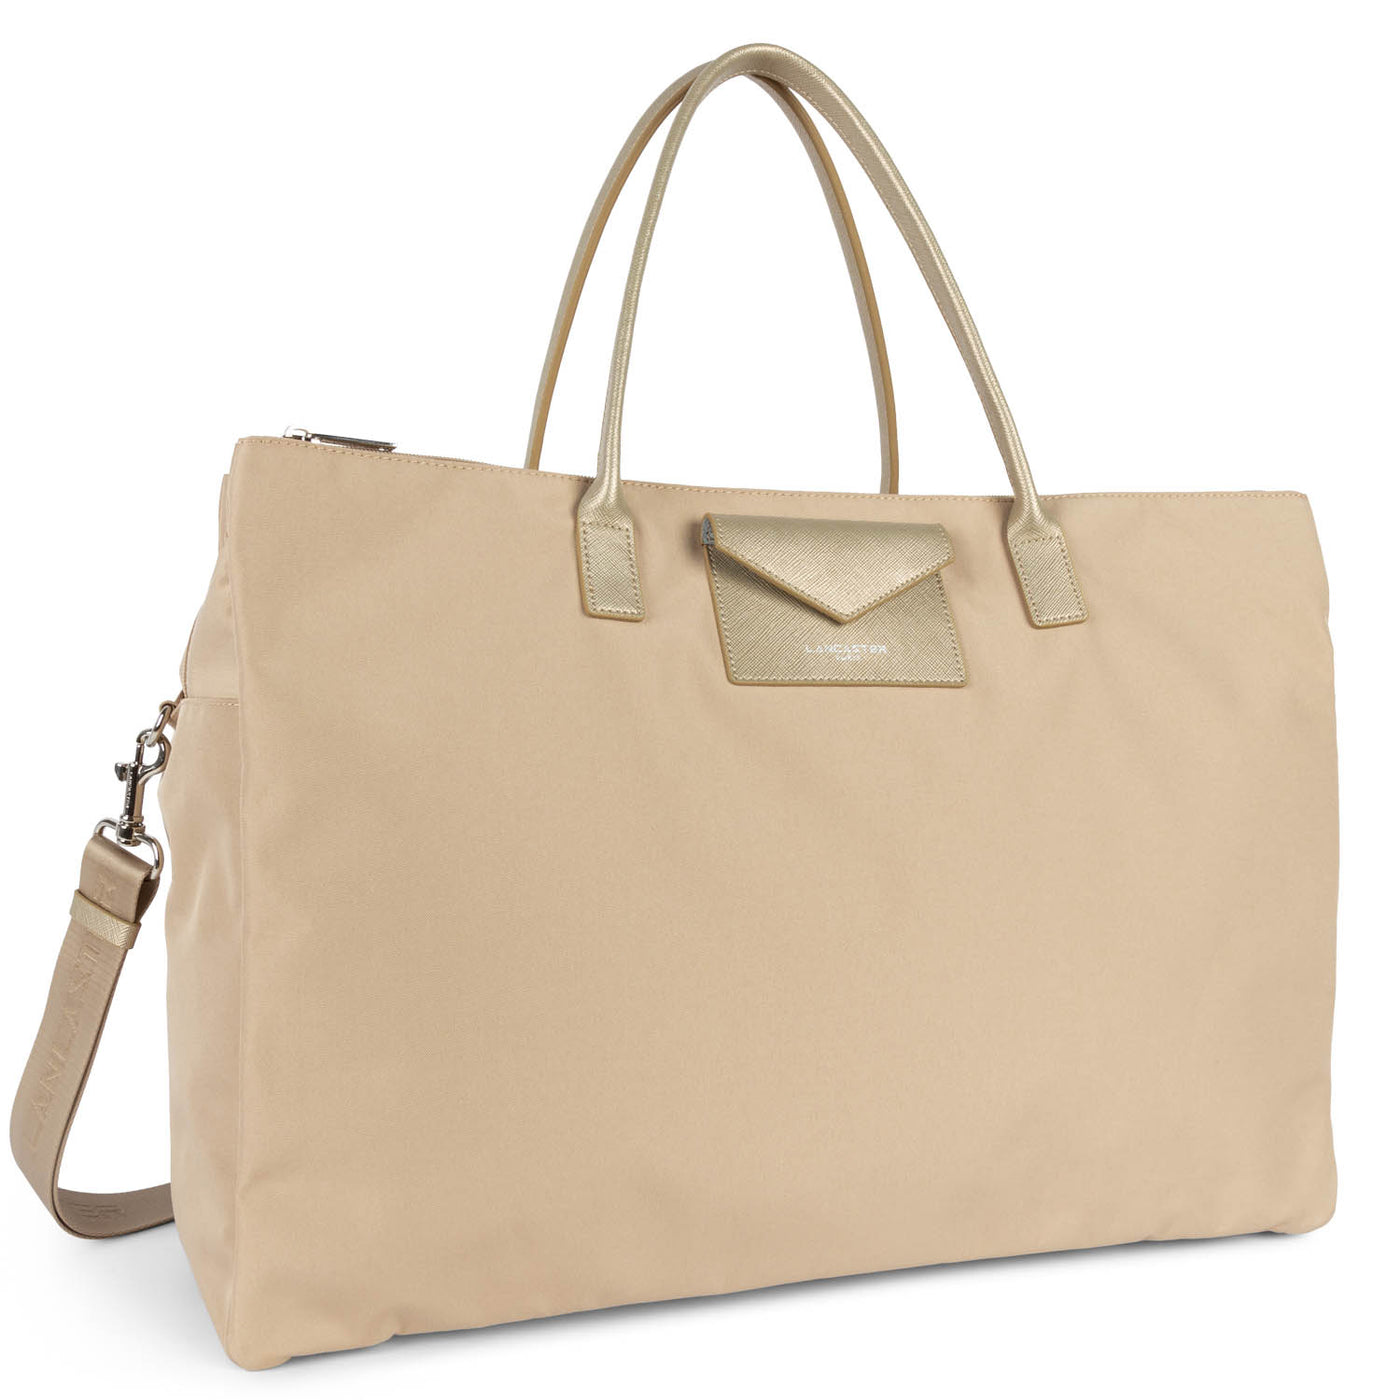 weekender bag - smart kba #couleur_beige